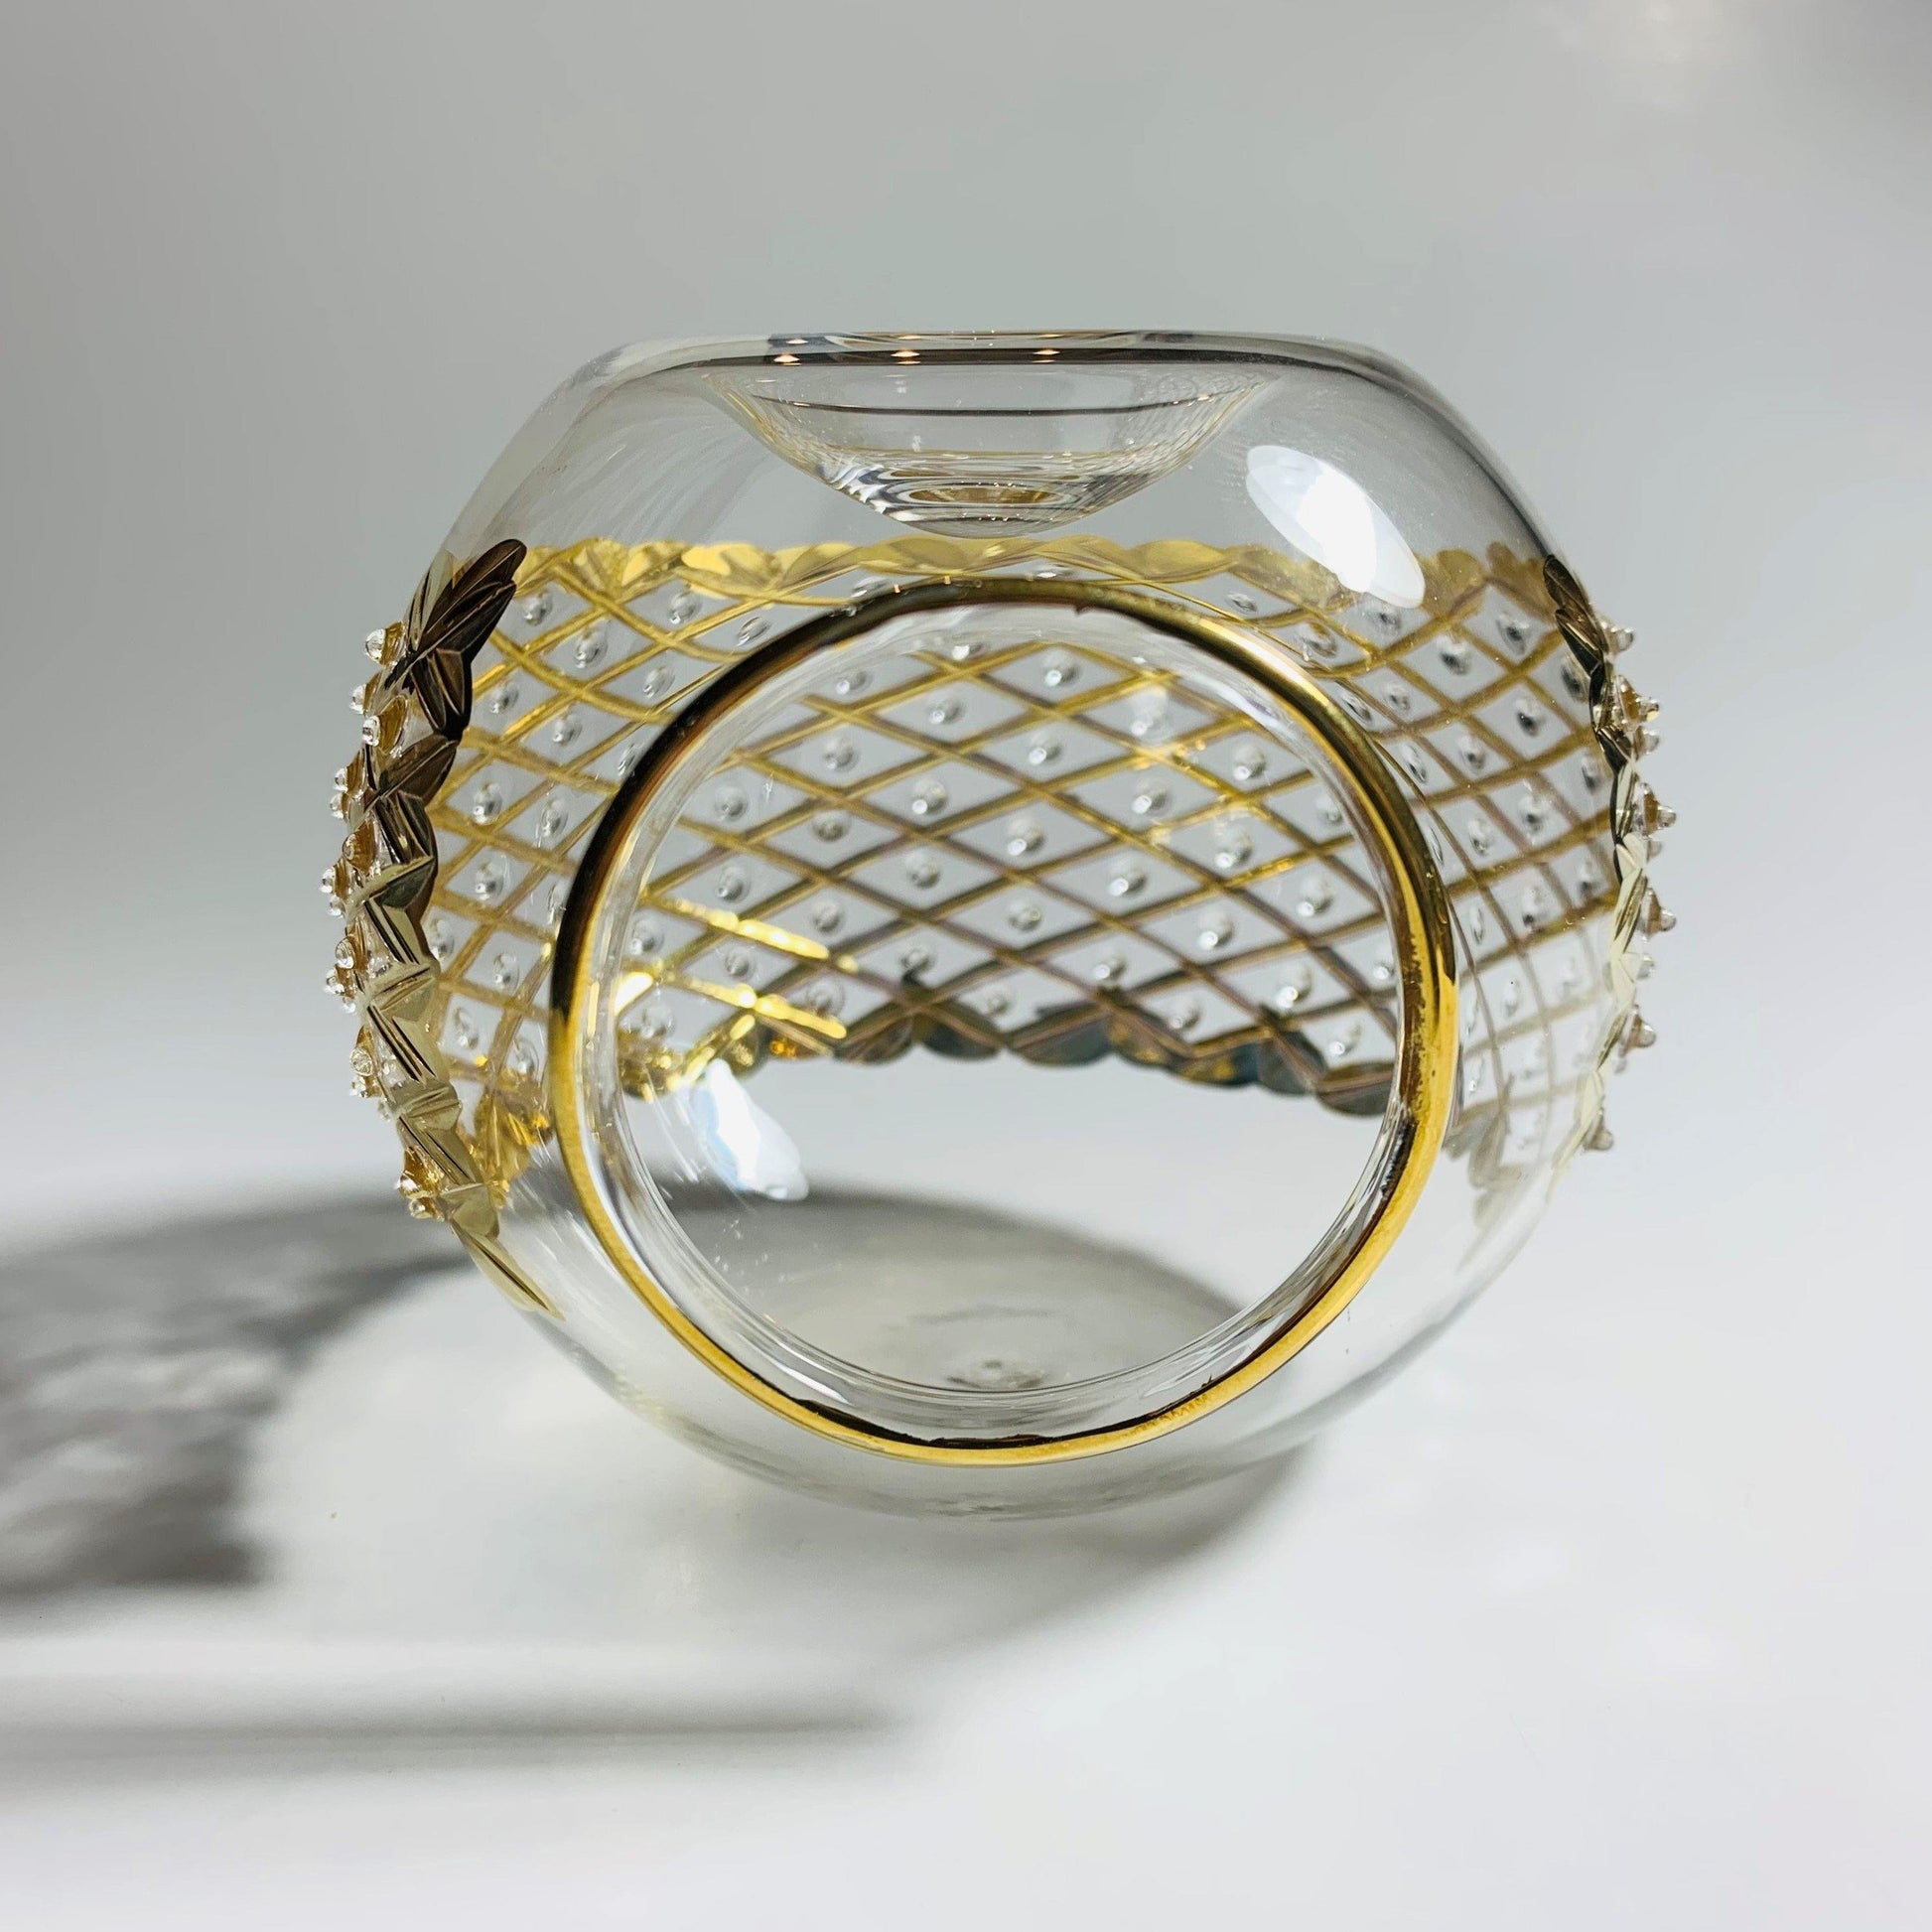 Blown Glass Oil Diffuser - Gold Diamonds